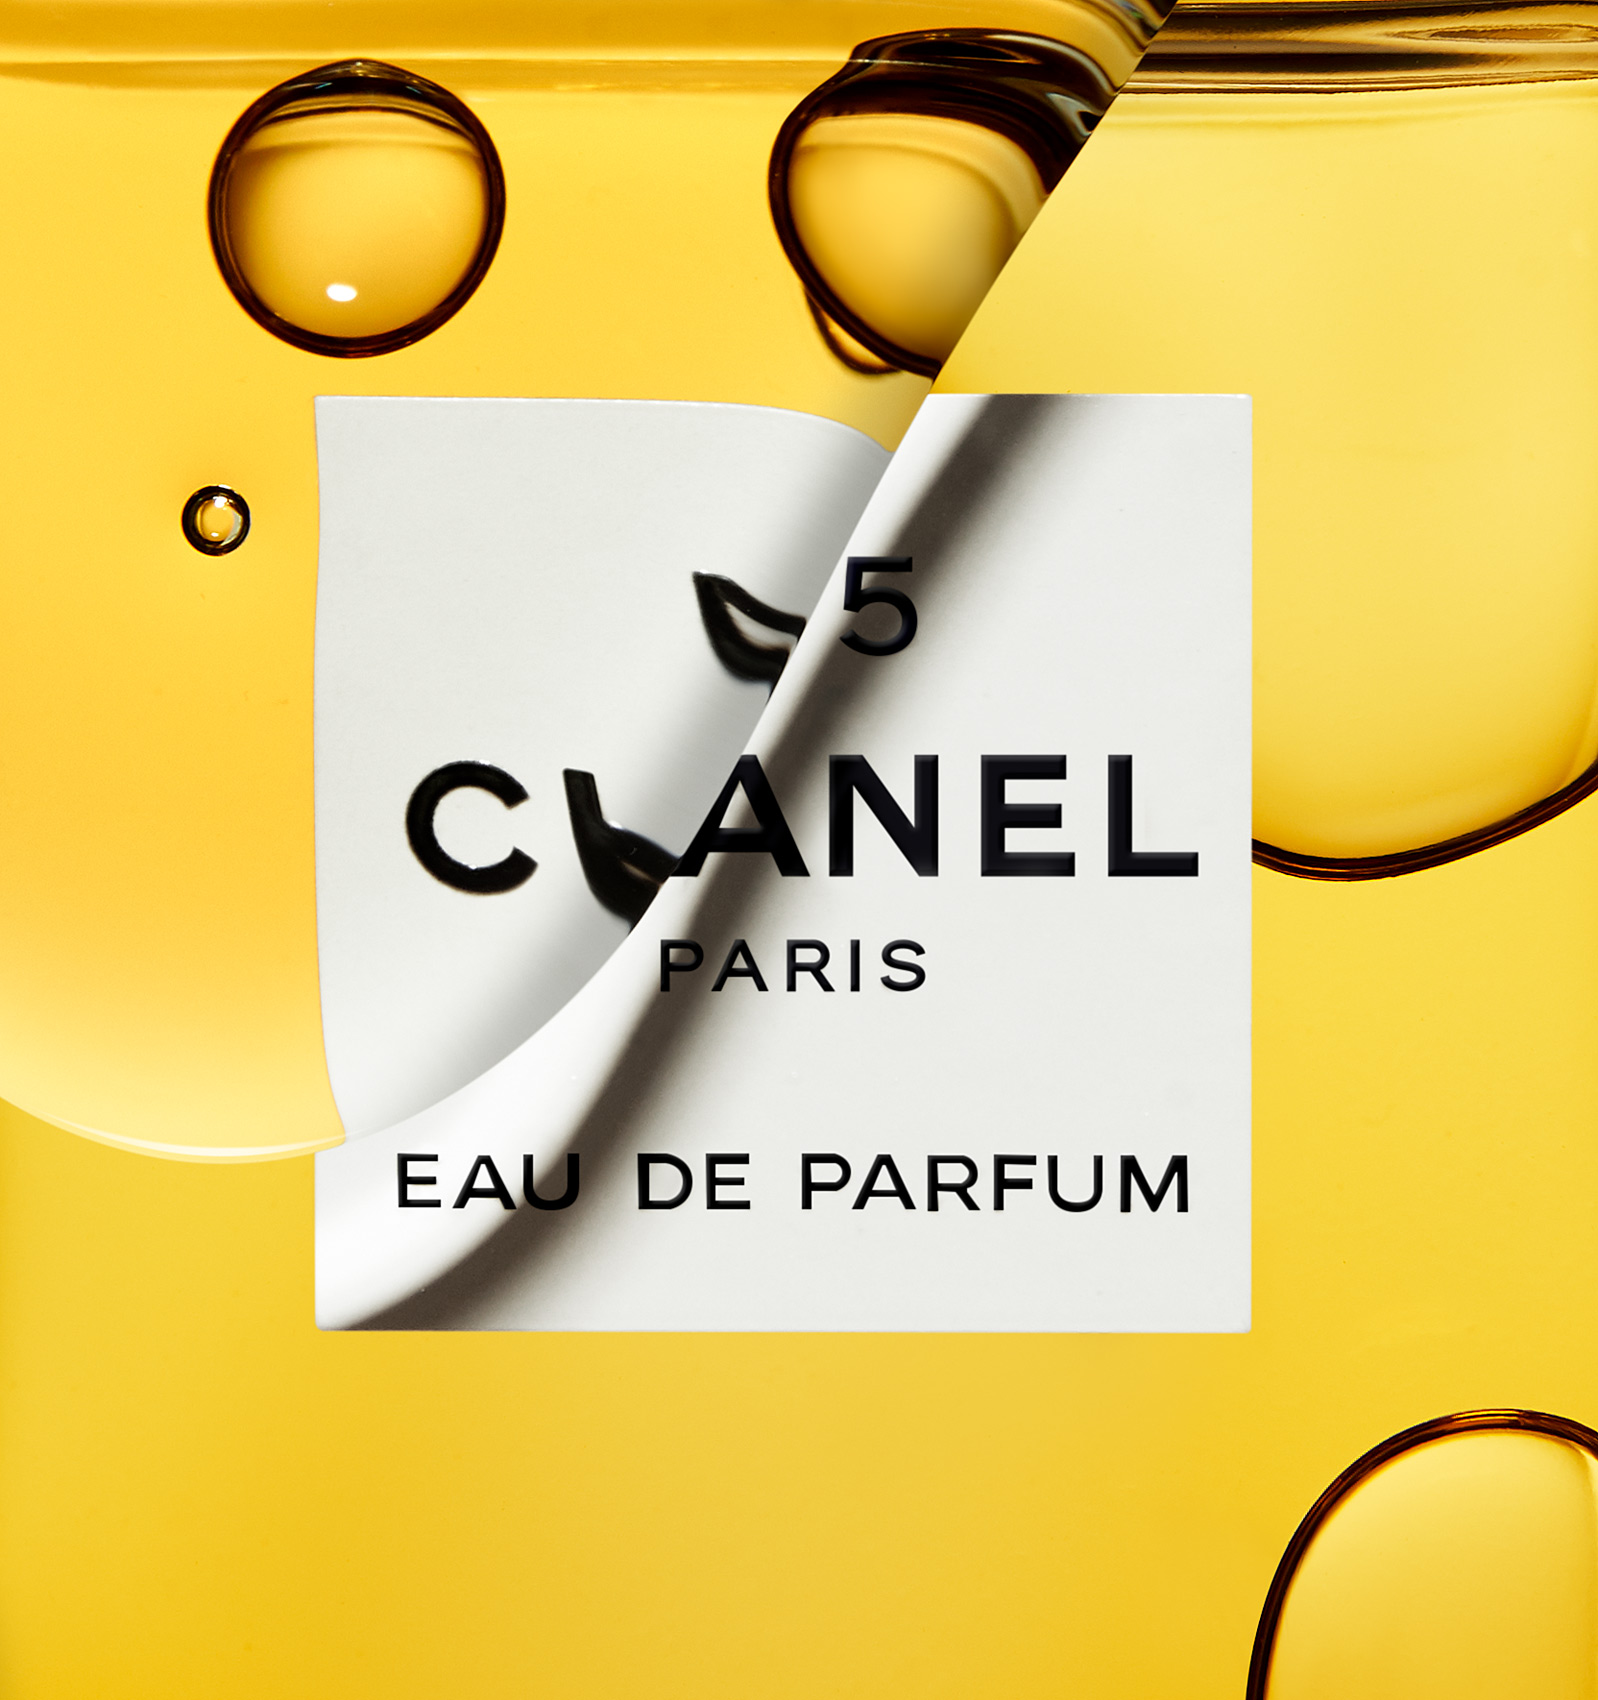 Chanel-Gold_02_WEB_StillLife